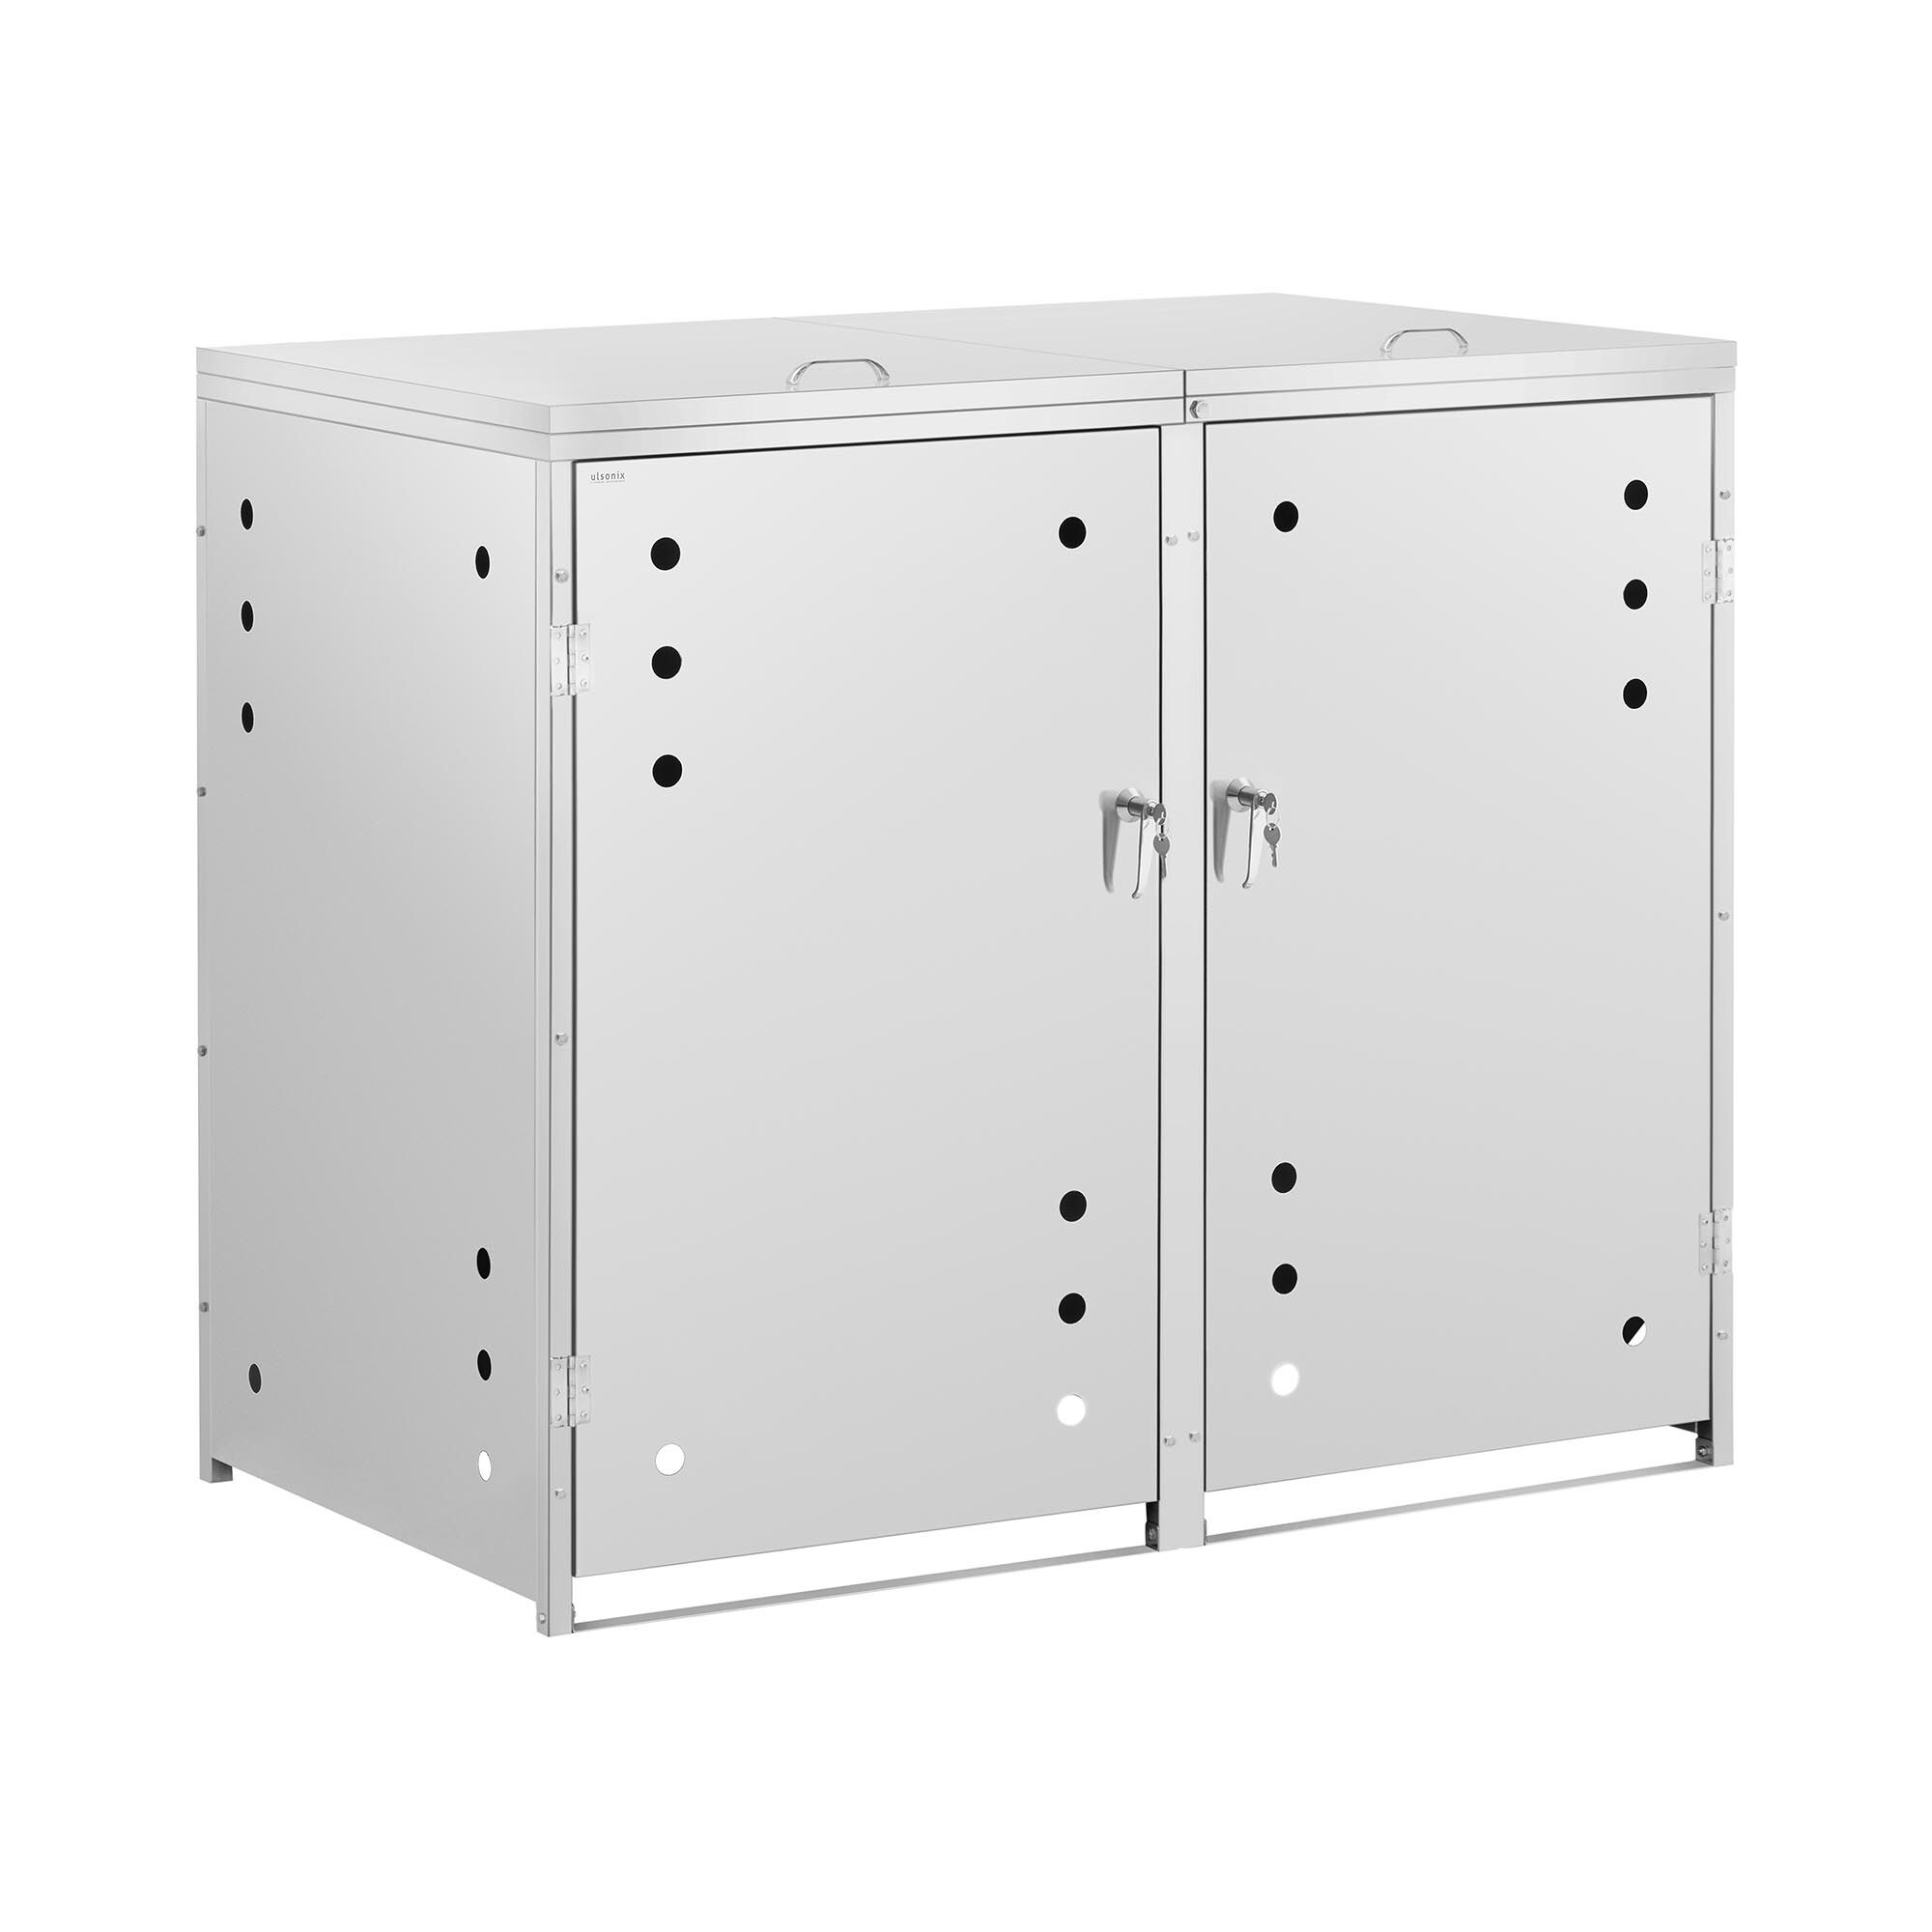 ulsonix Bin Storage Box - 2 x 240 L - horizontal air slots